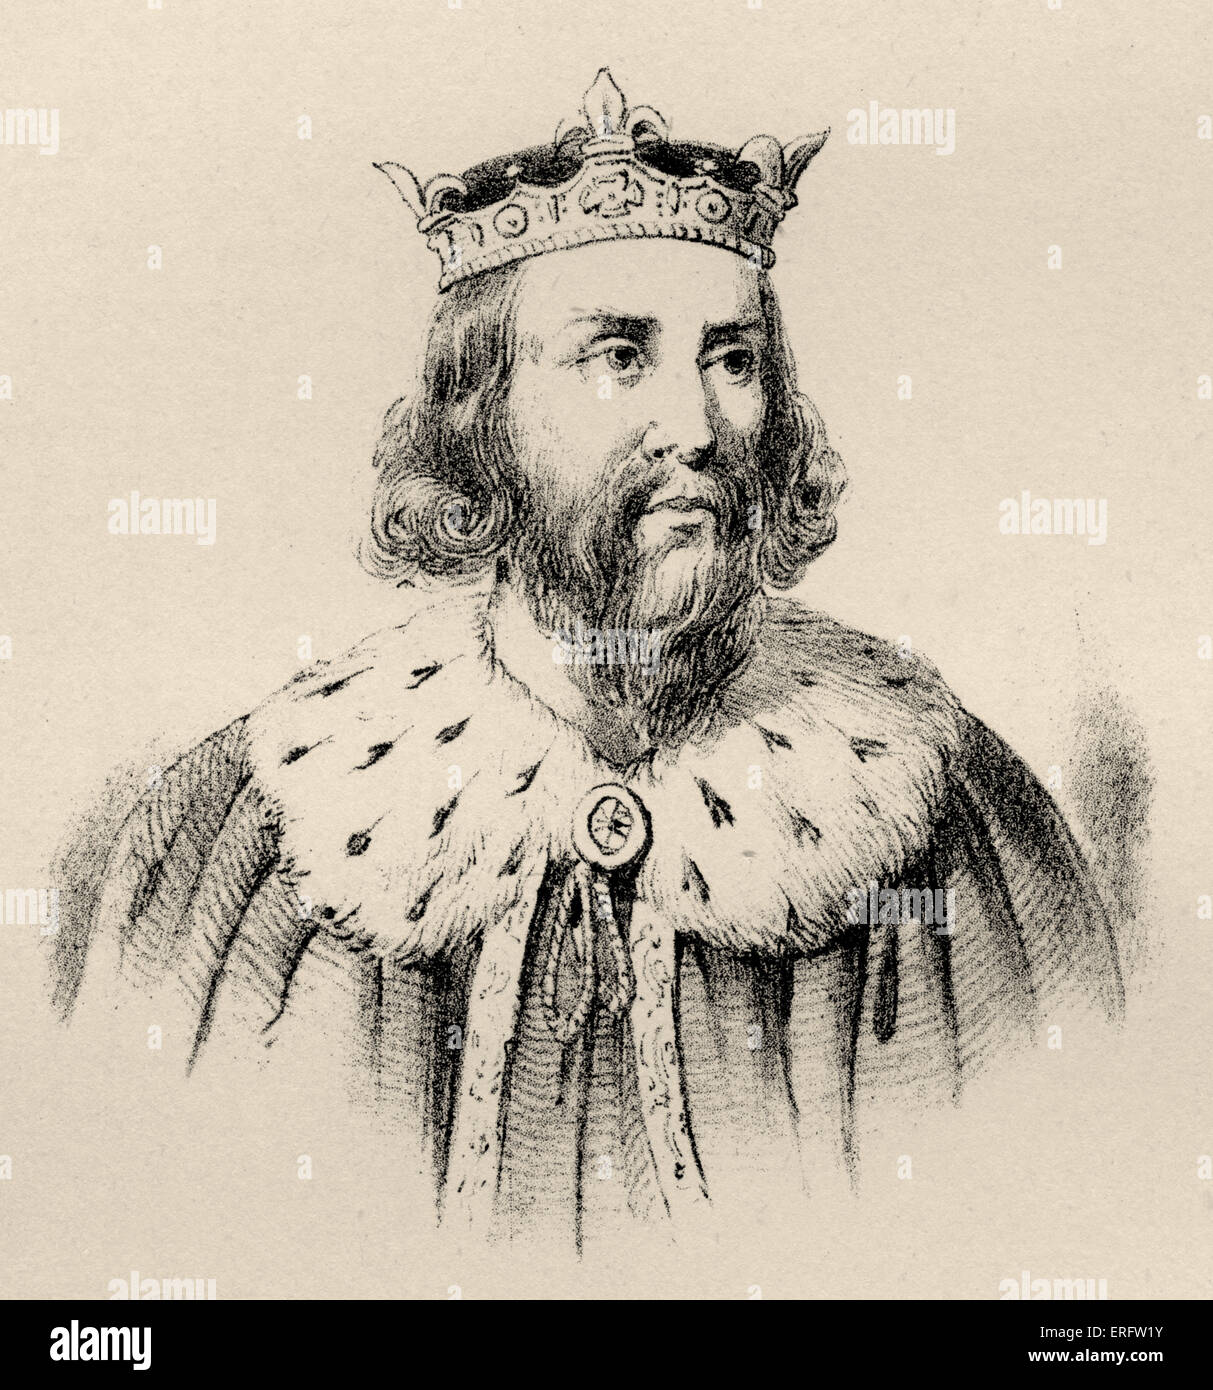 Alfred der große (849 – 899) war König von der südlichen angelsächsischen Königreich von Wessex von 871 bis 899. Alfred ist bekannt für seine Stockfoto